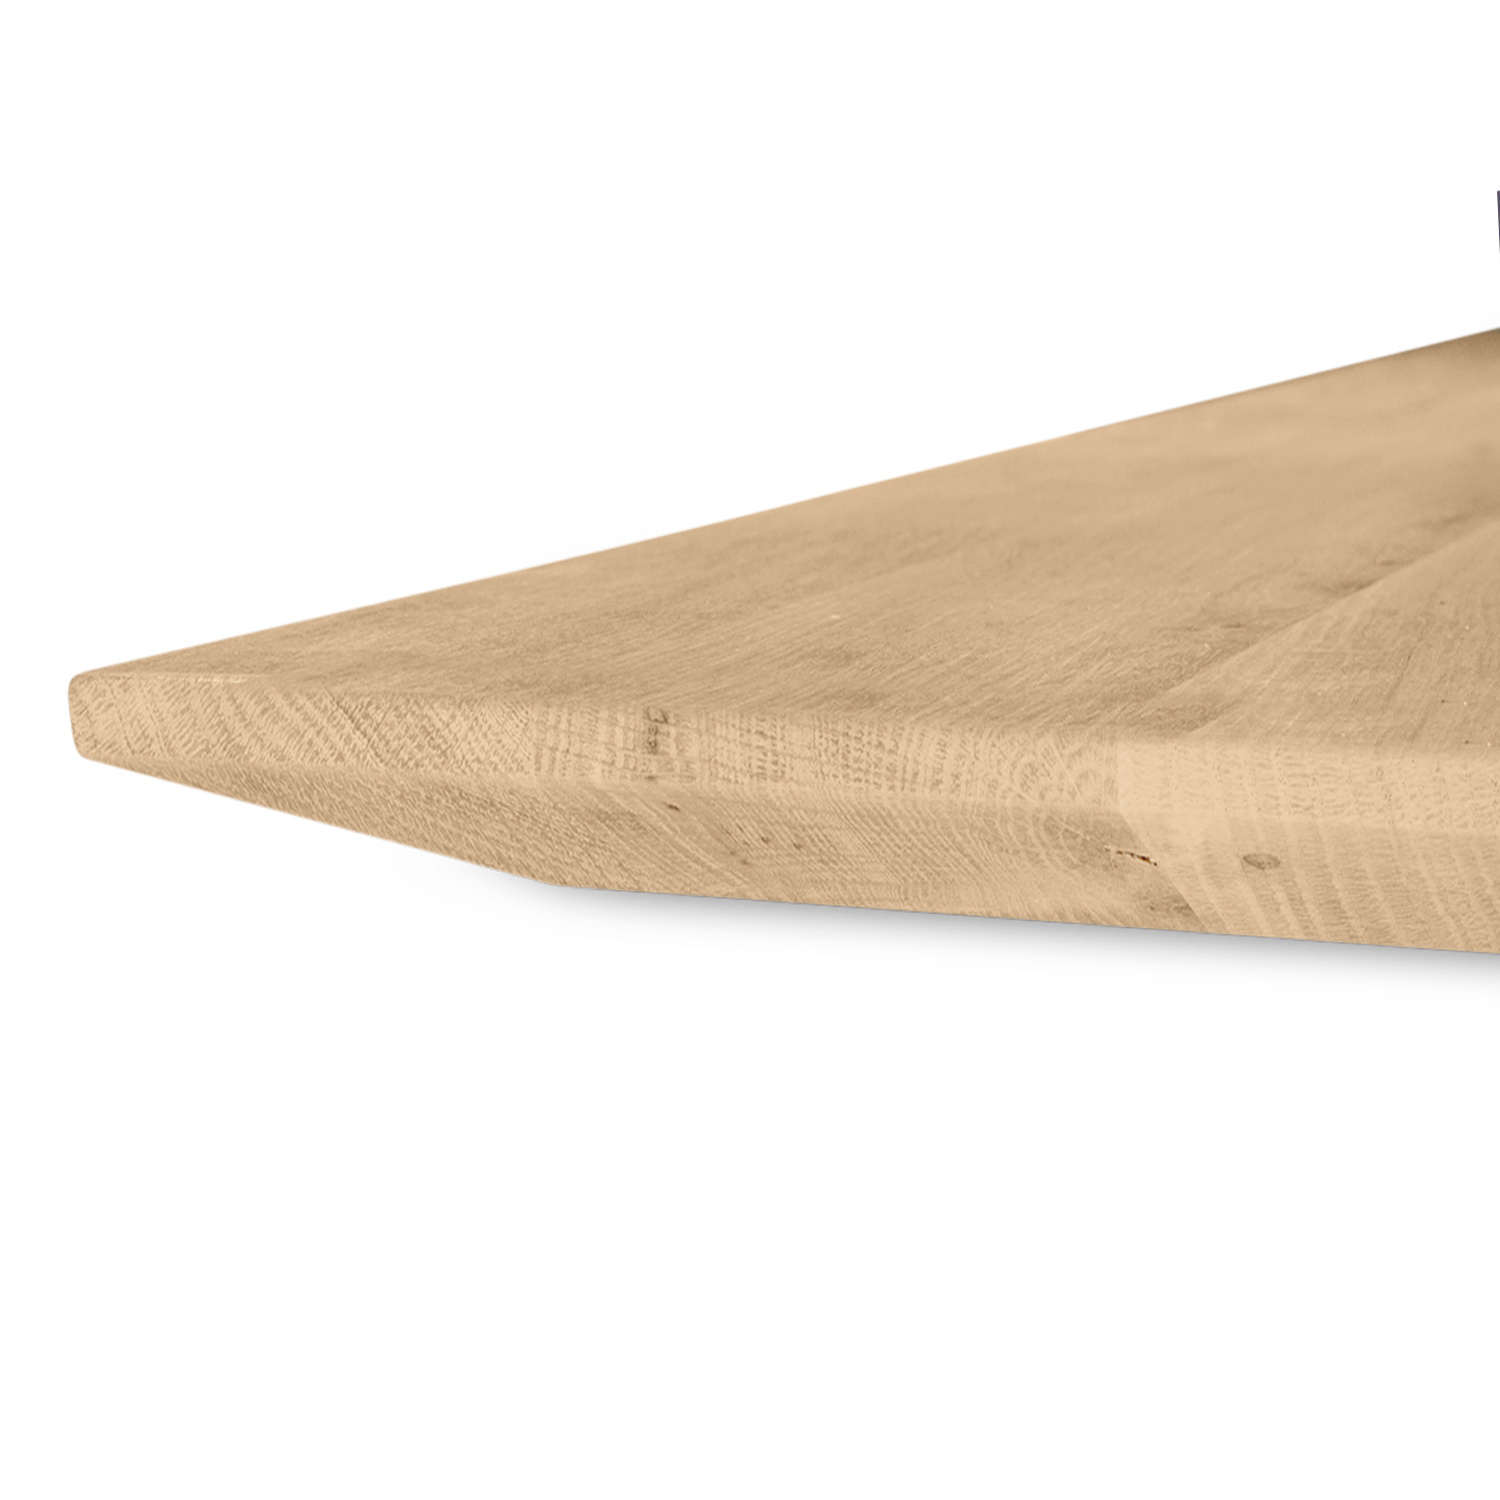  Eiken tafelblad verjongd op maat - 2,7 cm dik (1-laag) - rustiek Europees eikenhout - met brede lamellen (circa 10-12 cm) - verlijmd kd 8-12% - 50-120x50-248 cm